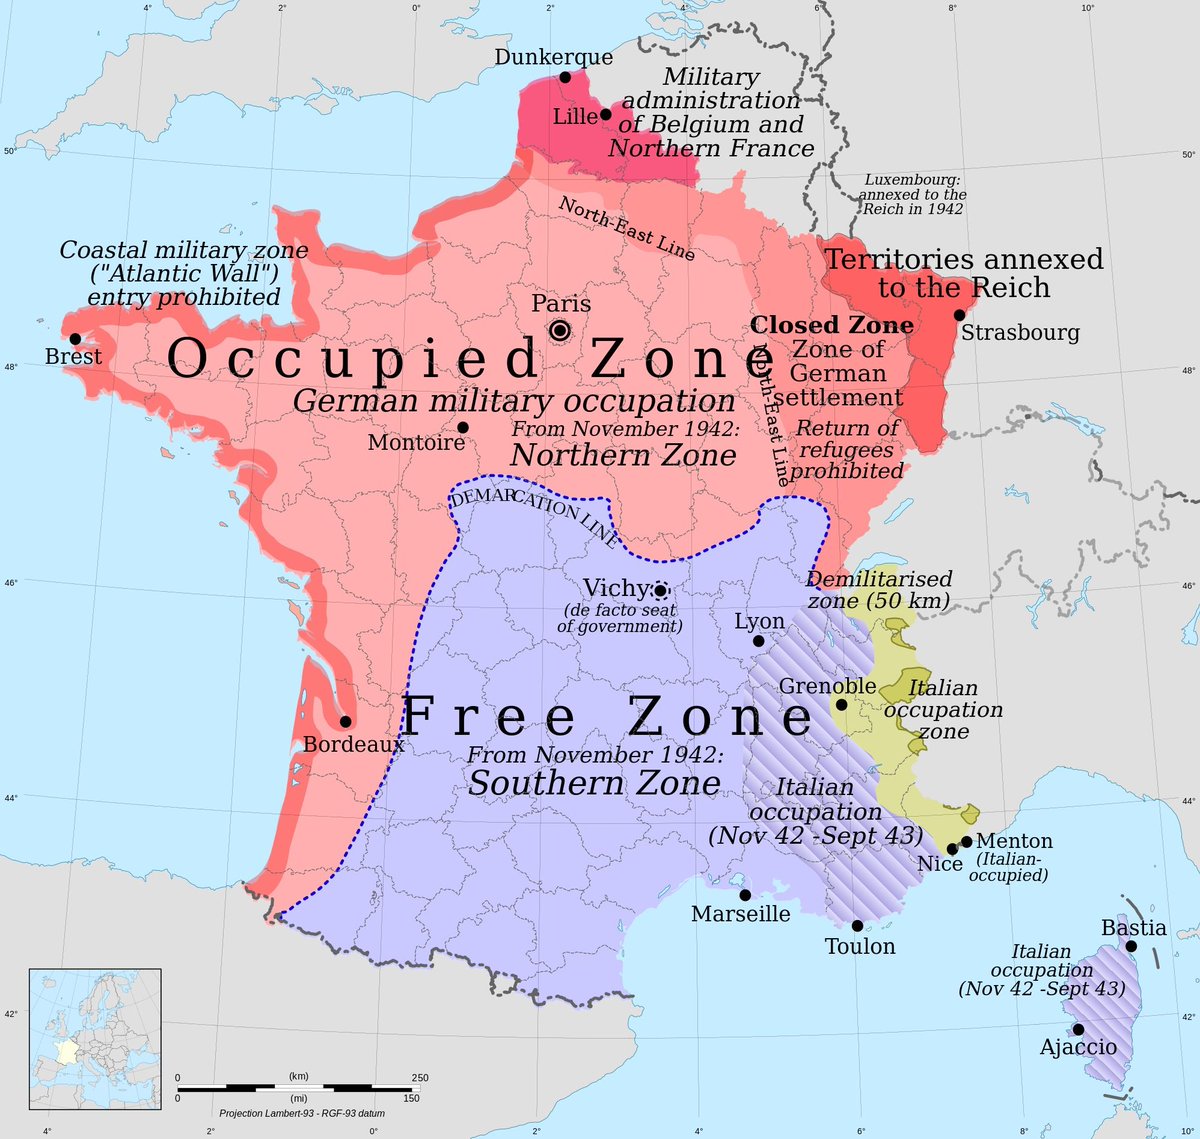 Mapa da França, mostrando o norte ocupado pelos nazistas e a zona livre ao sul